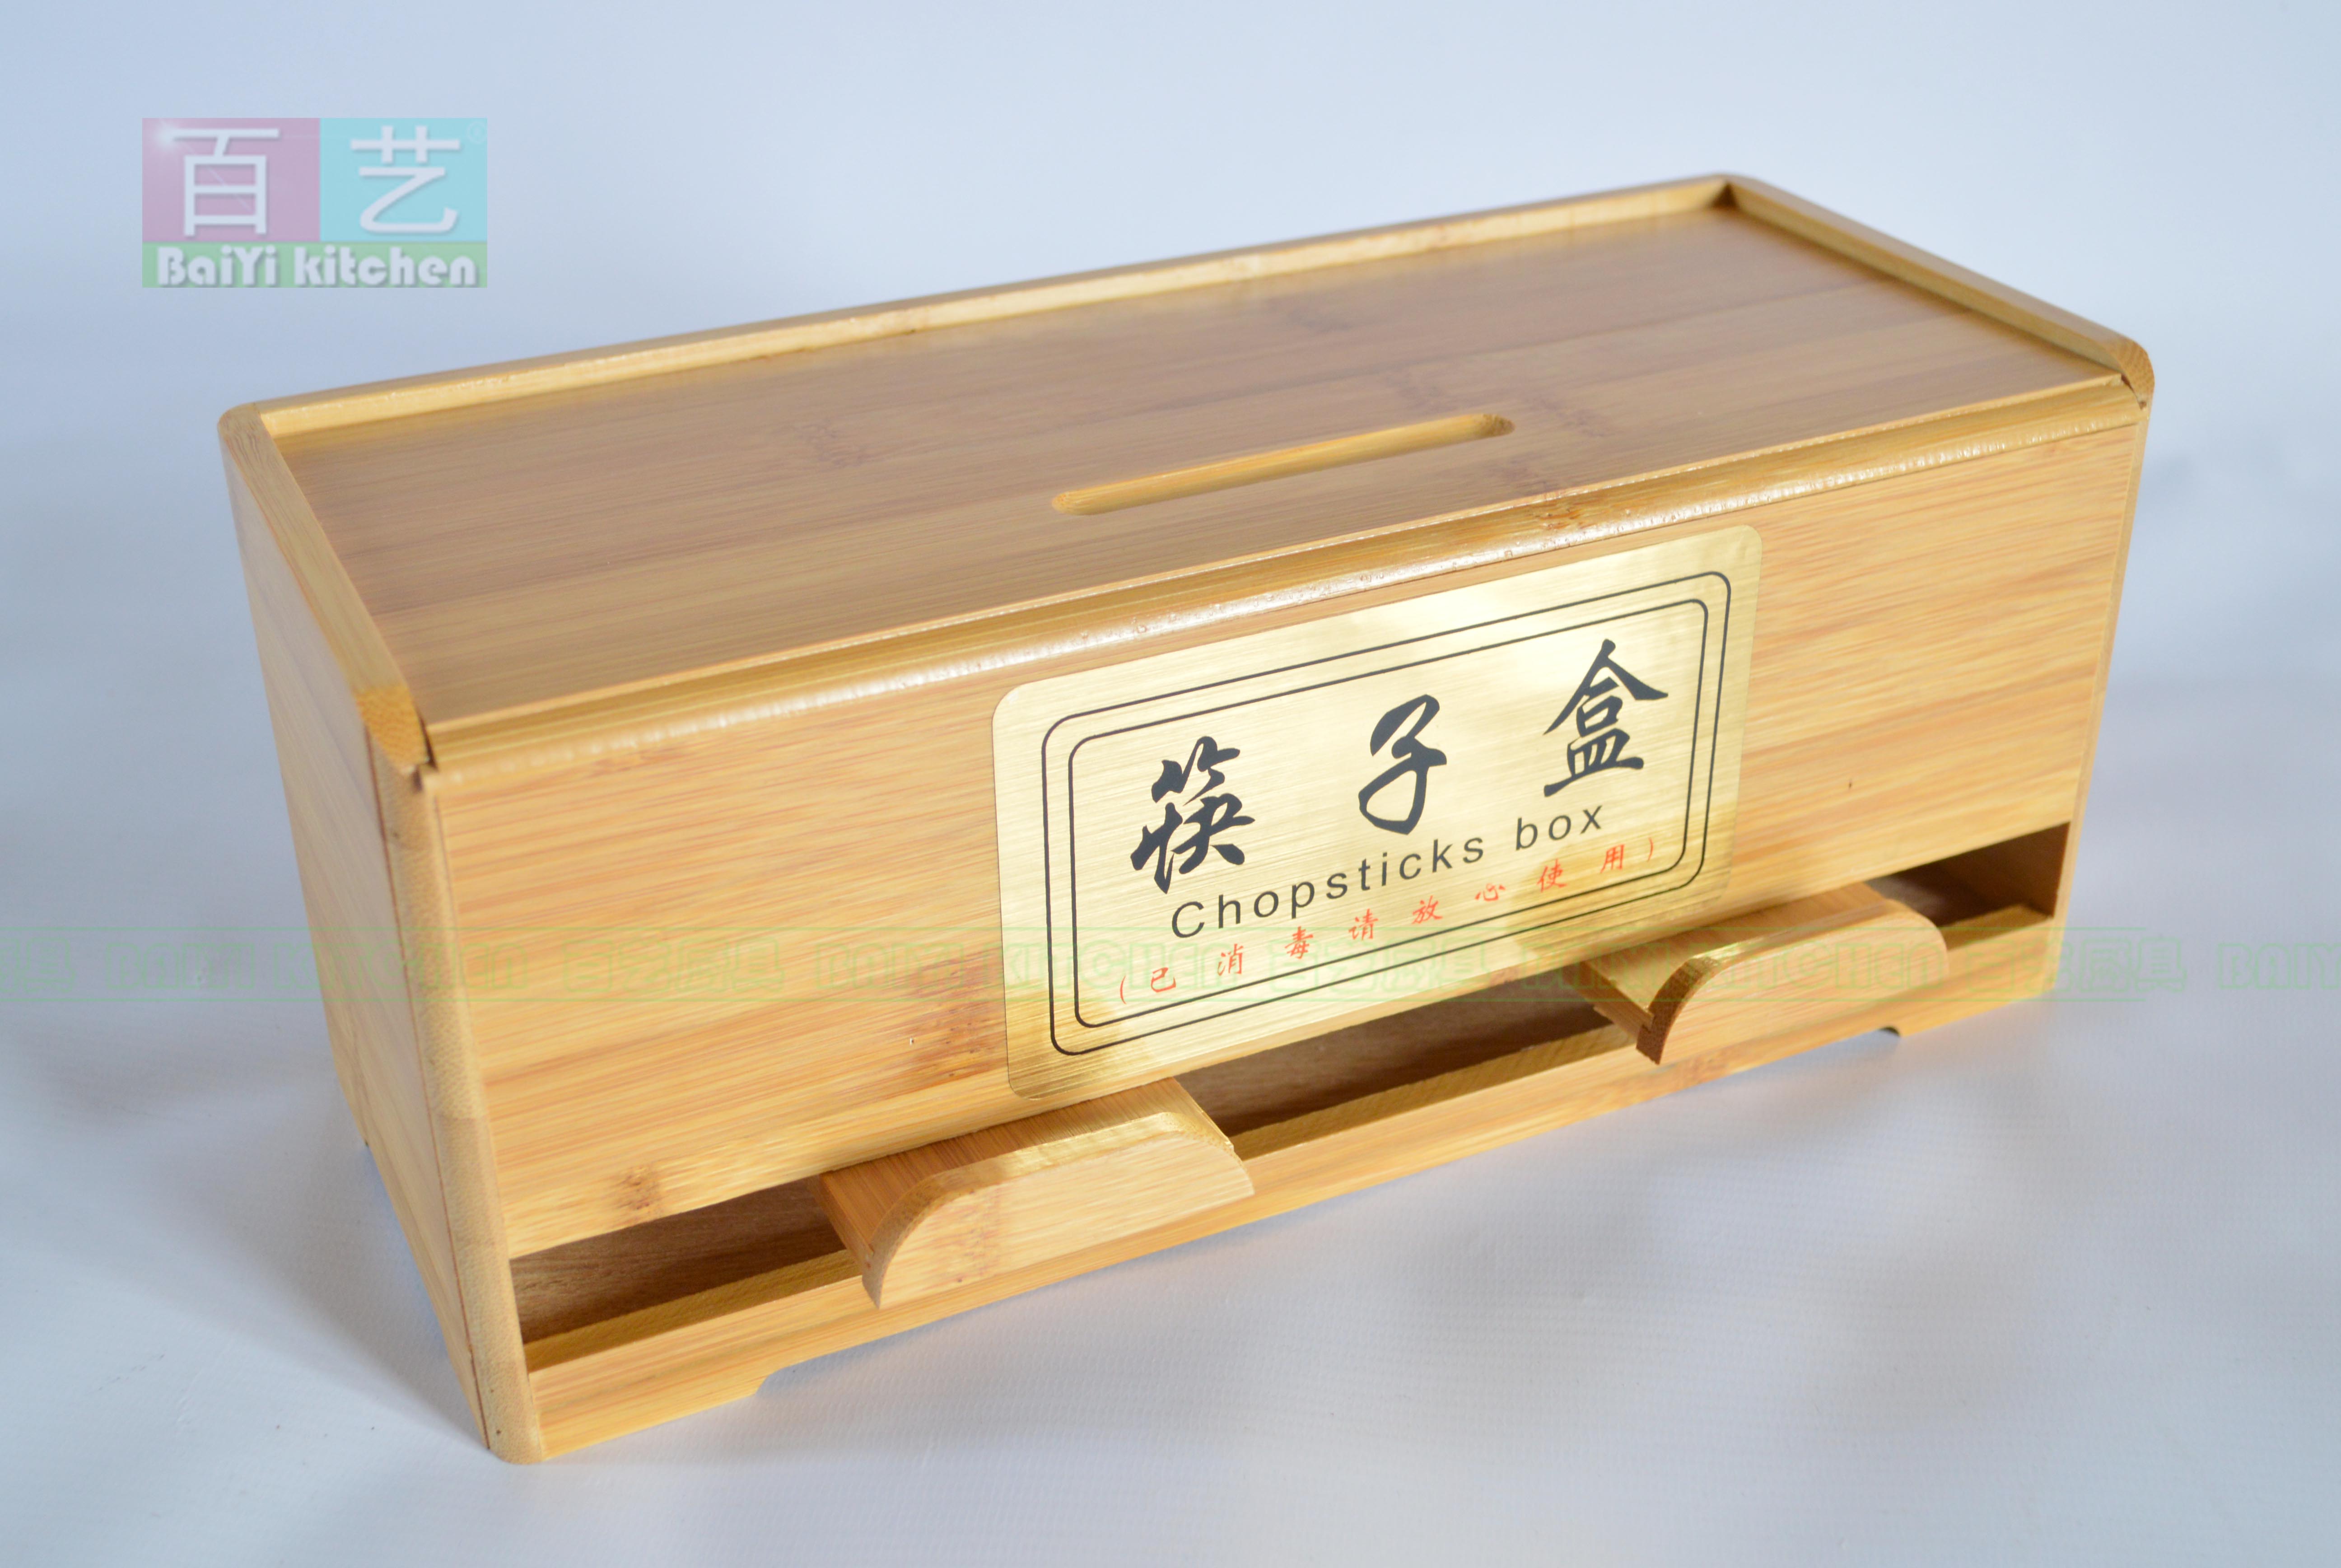 竹制 筷子盒 吸管盒 筷子笼 快餐店筷子盒 餐厅筷子盒